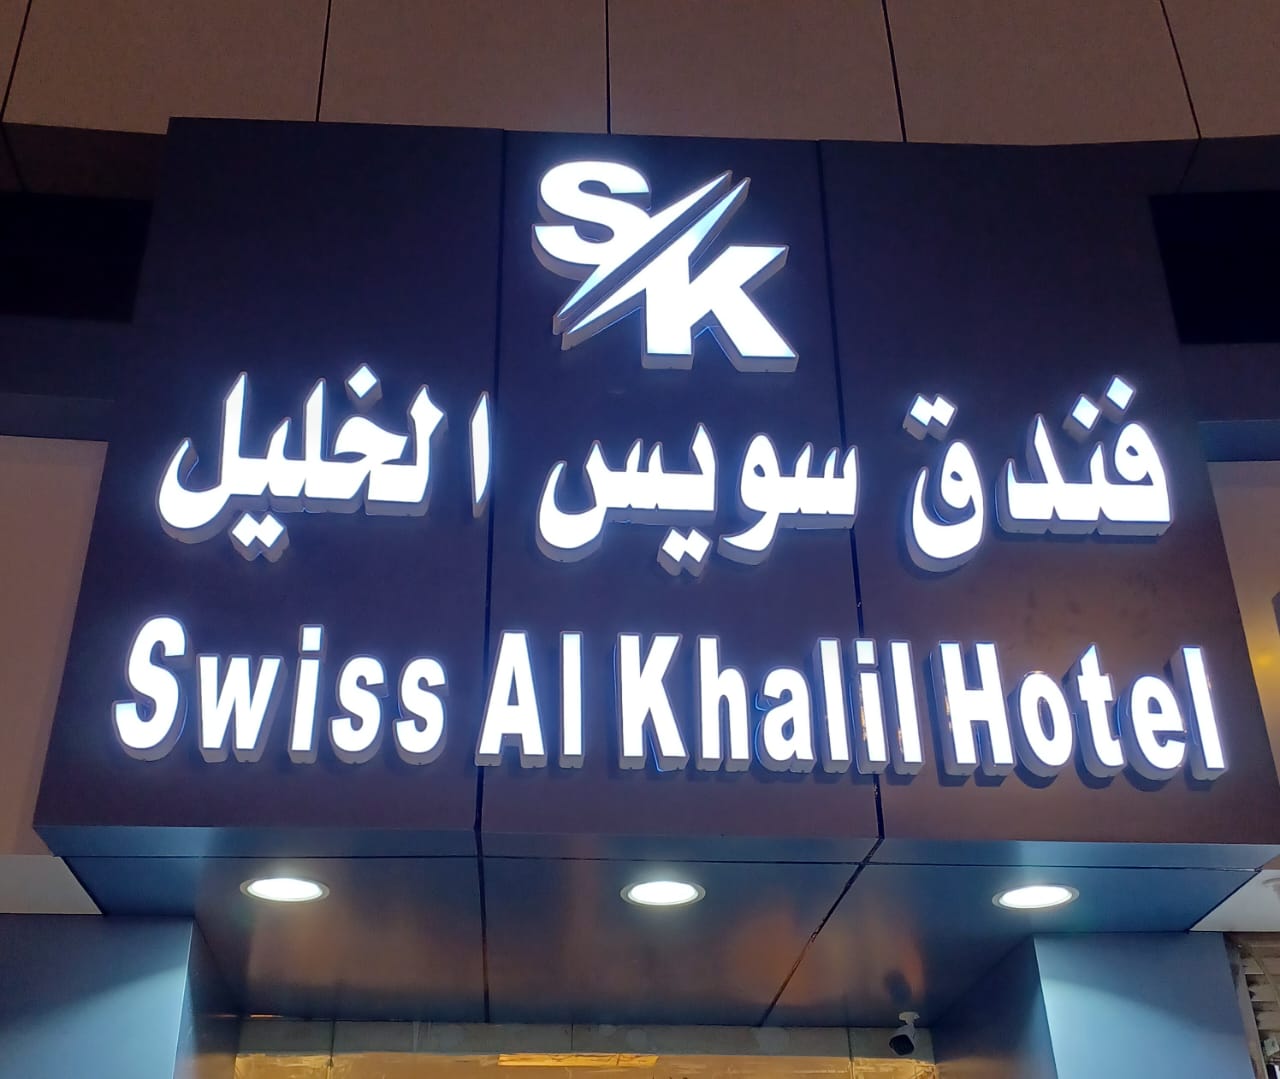 Swiss-Al-Khalil-Hotel-Ex-Yajid-Hotel